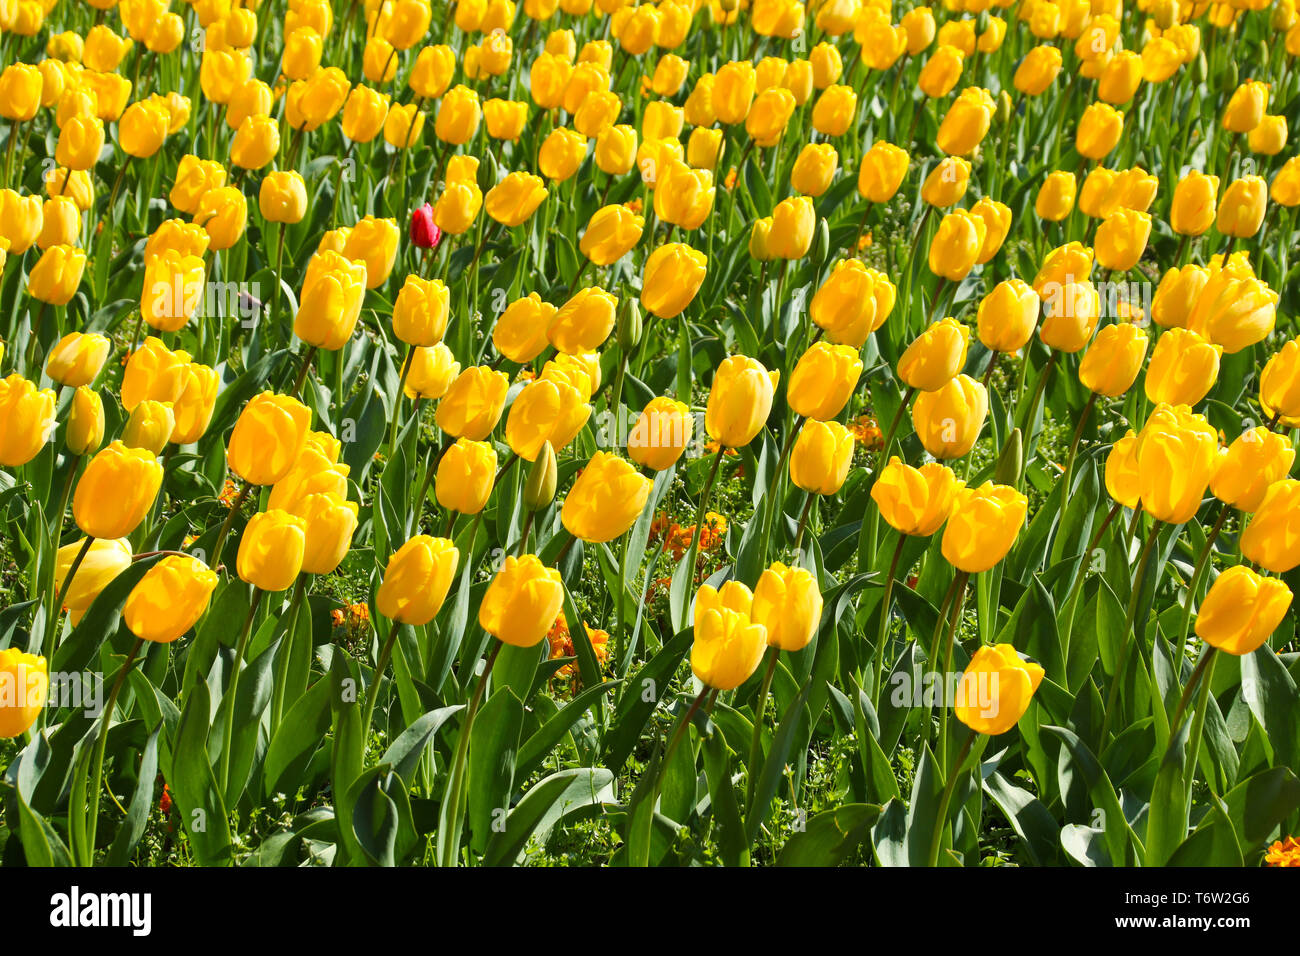 Eine schöne Darstellung der Frühling Blumen der gelbe Tulpen, Orange Lilly und Pink Cherry Tree Blossom an einem sonnigen Frühlingsmorgen. Cardiff, Großbritannien Stockfoto